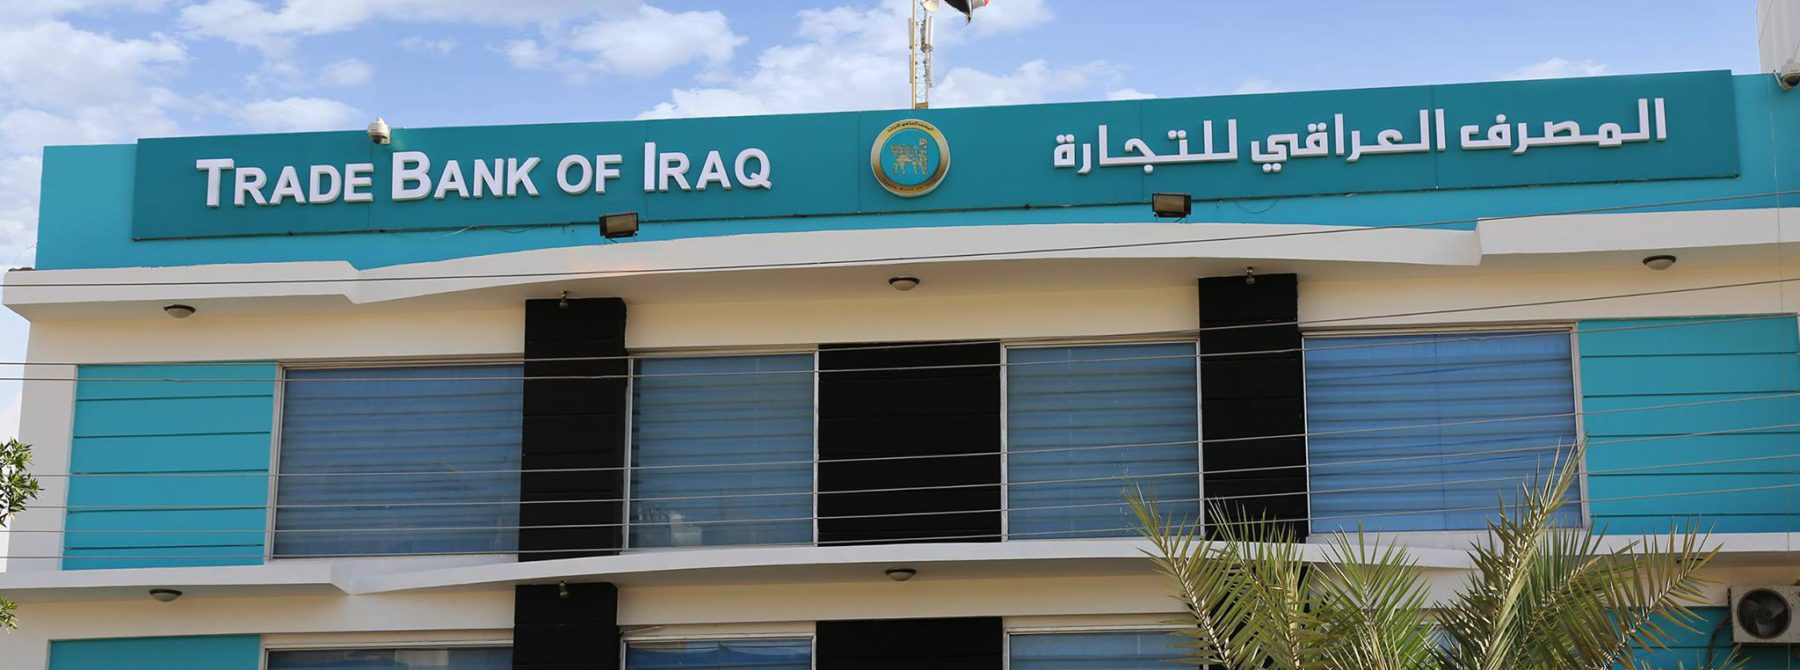 النزاهة النيابية:تشكيل لجنة خماسية لاسترداد الاموال المأخوذة من المصرف العراقي للتجارة